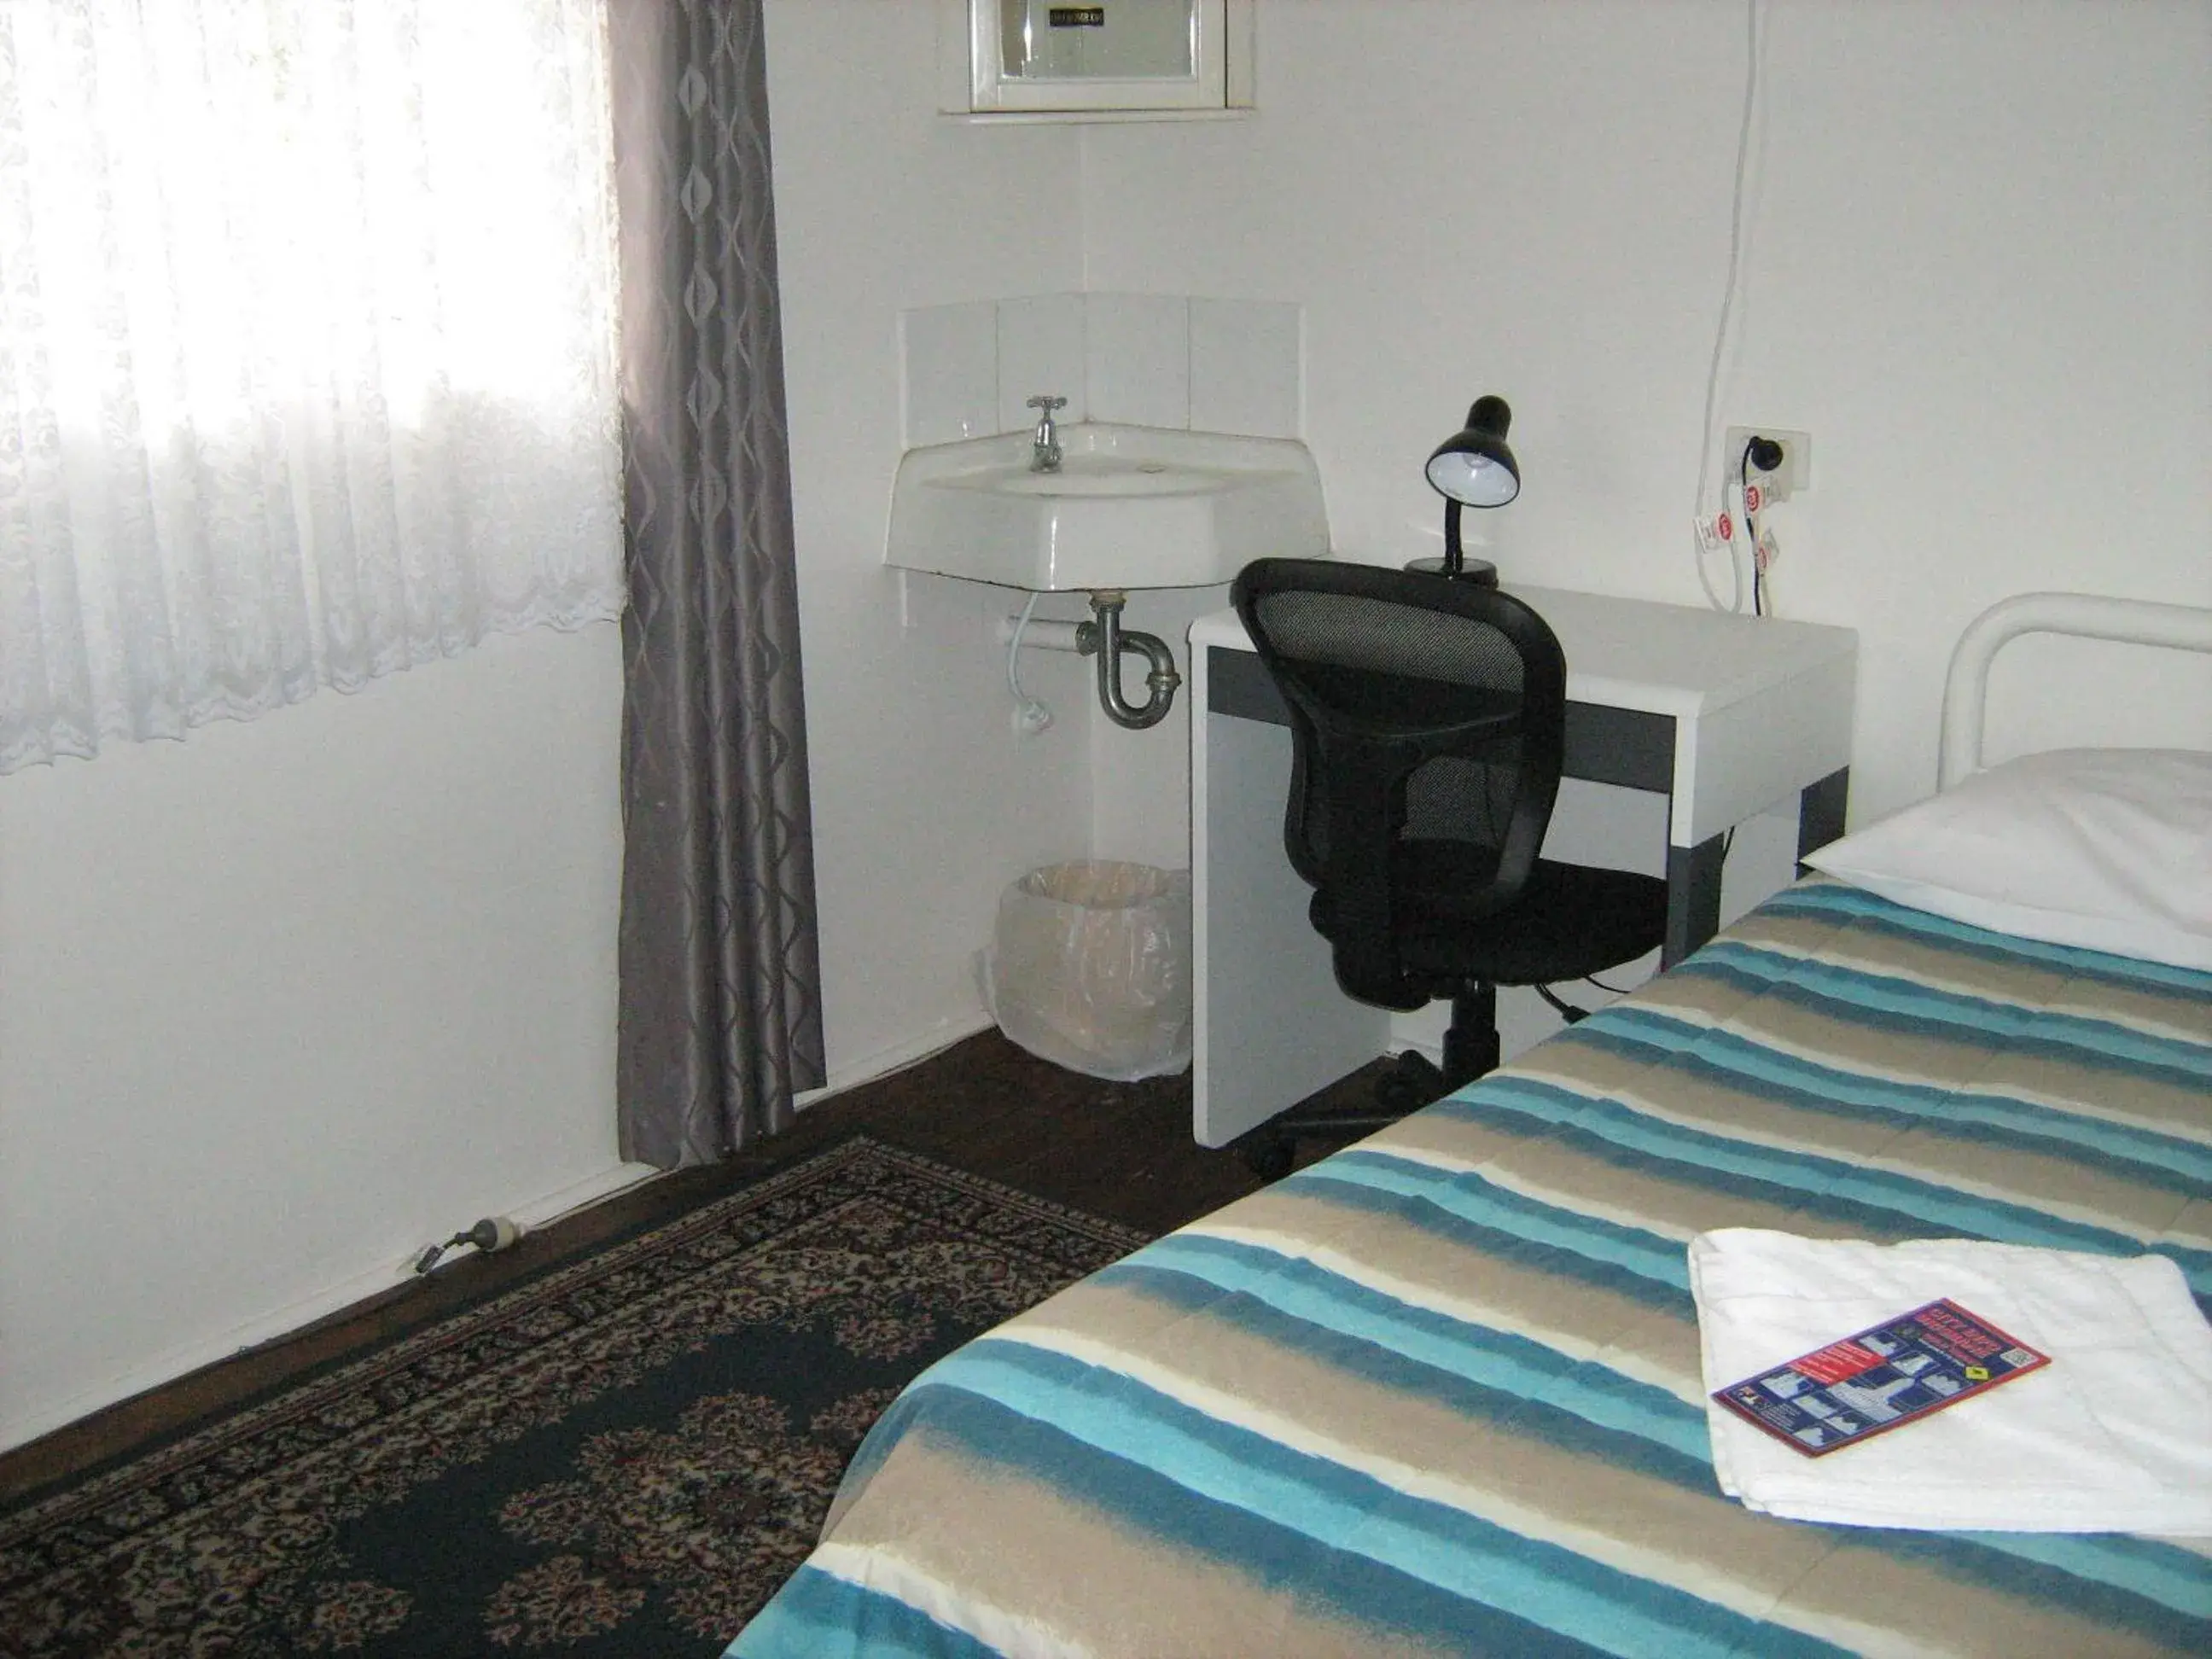 Bed in Kookaburra Inn